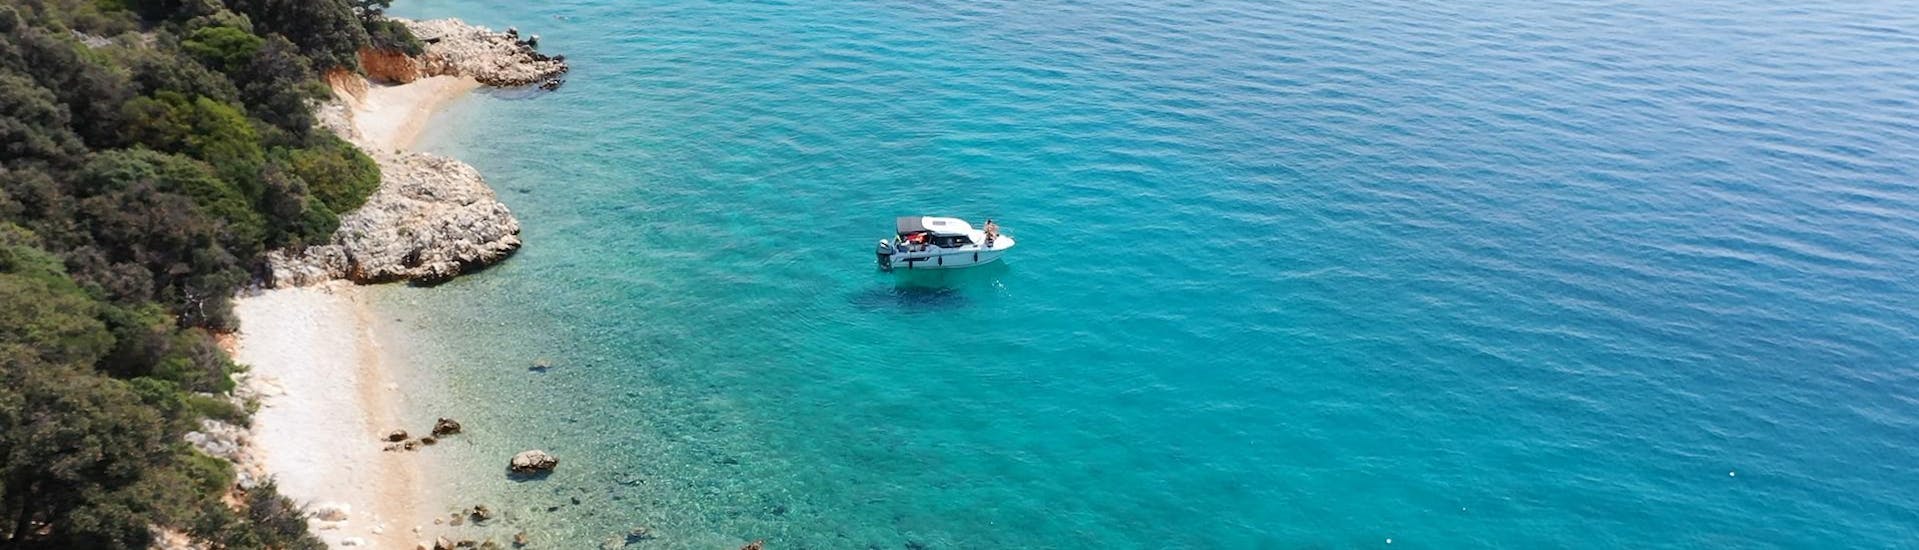 Ein Boot von Rent a Boat & Jetski Krk vor einem Strand im türkisen Wasser.